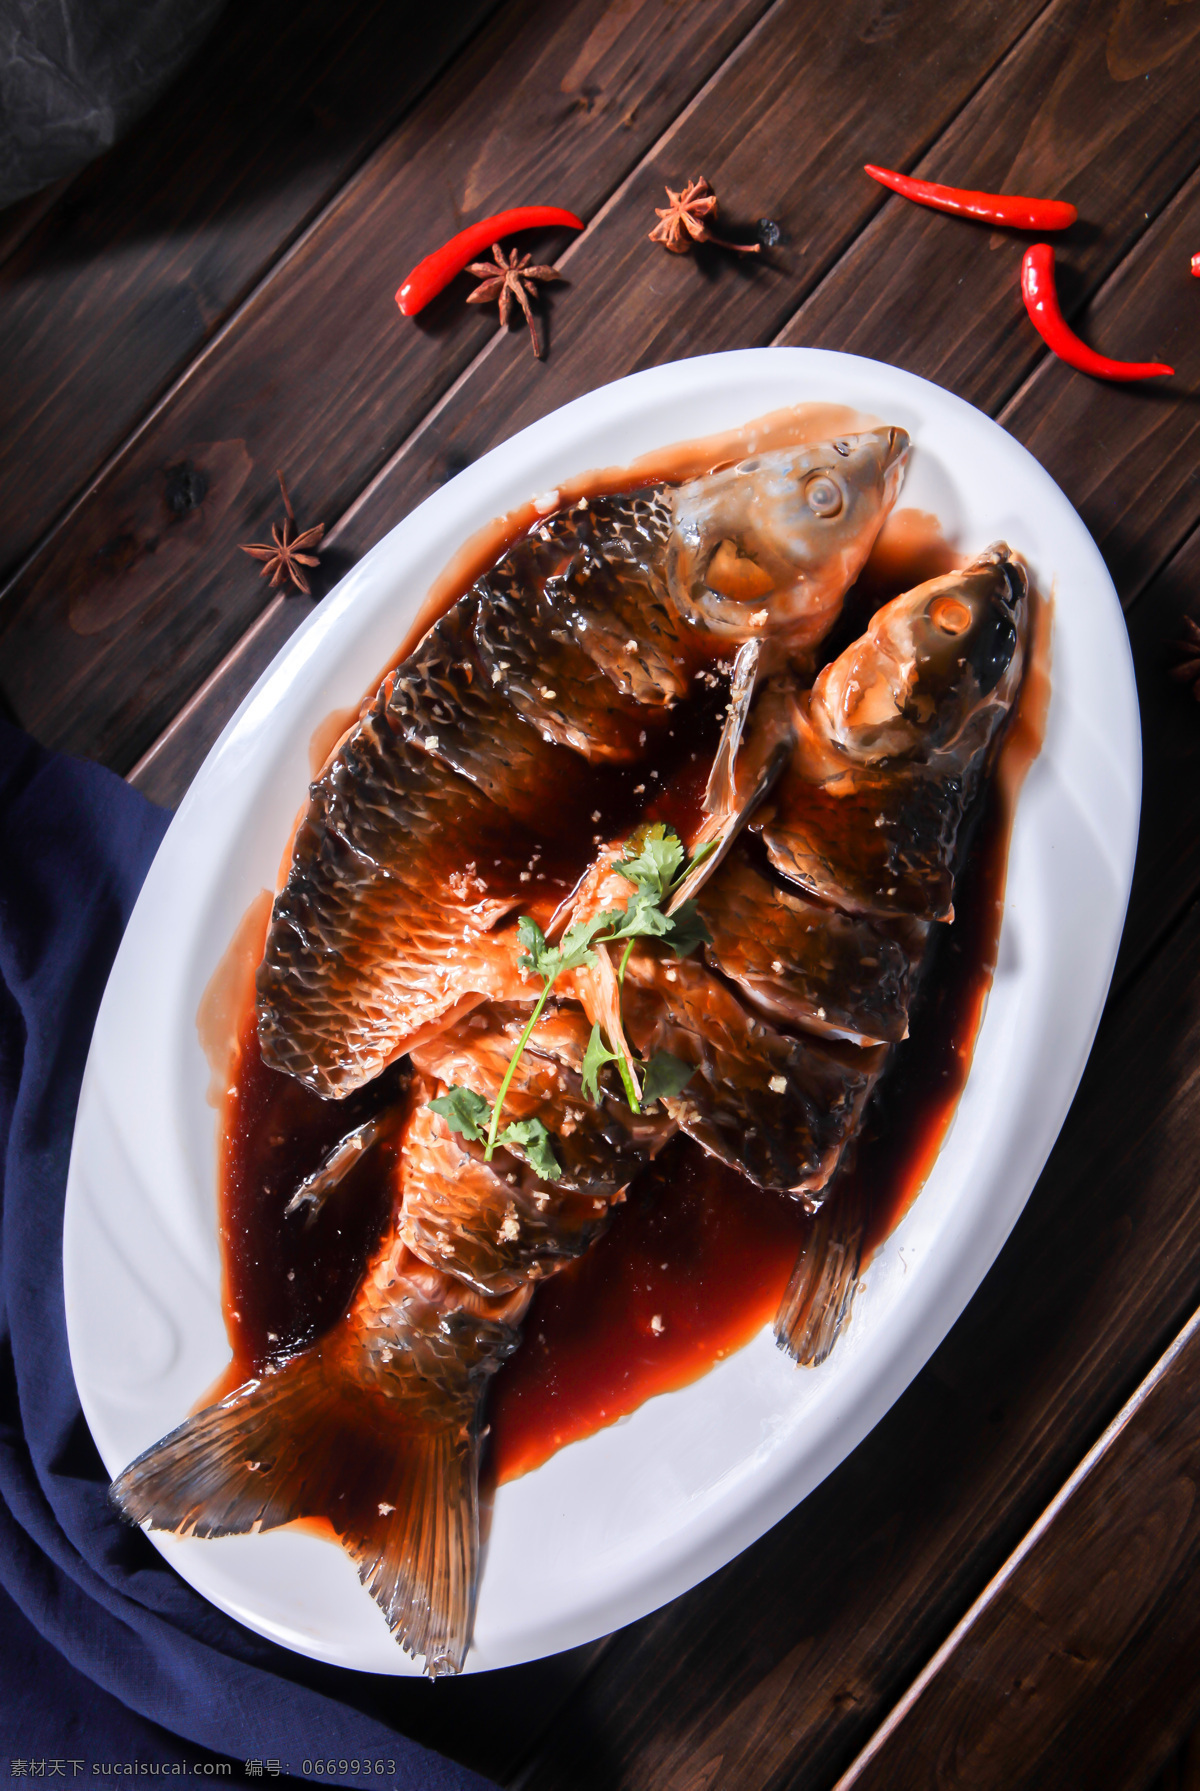 西湖醋鱼 中餐 美食 传统美食 菜图 菜图中餐 餐饮美食